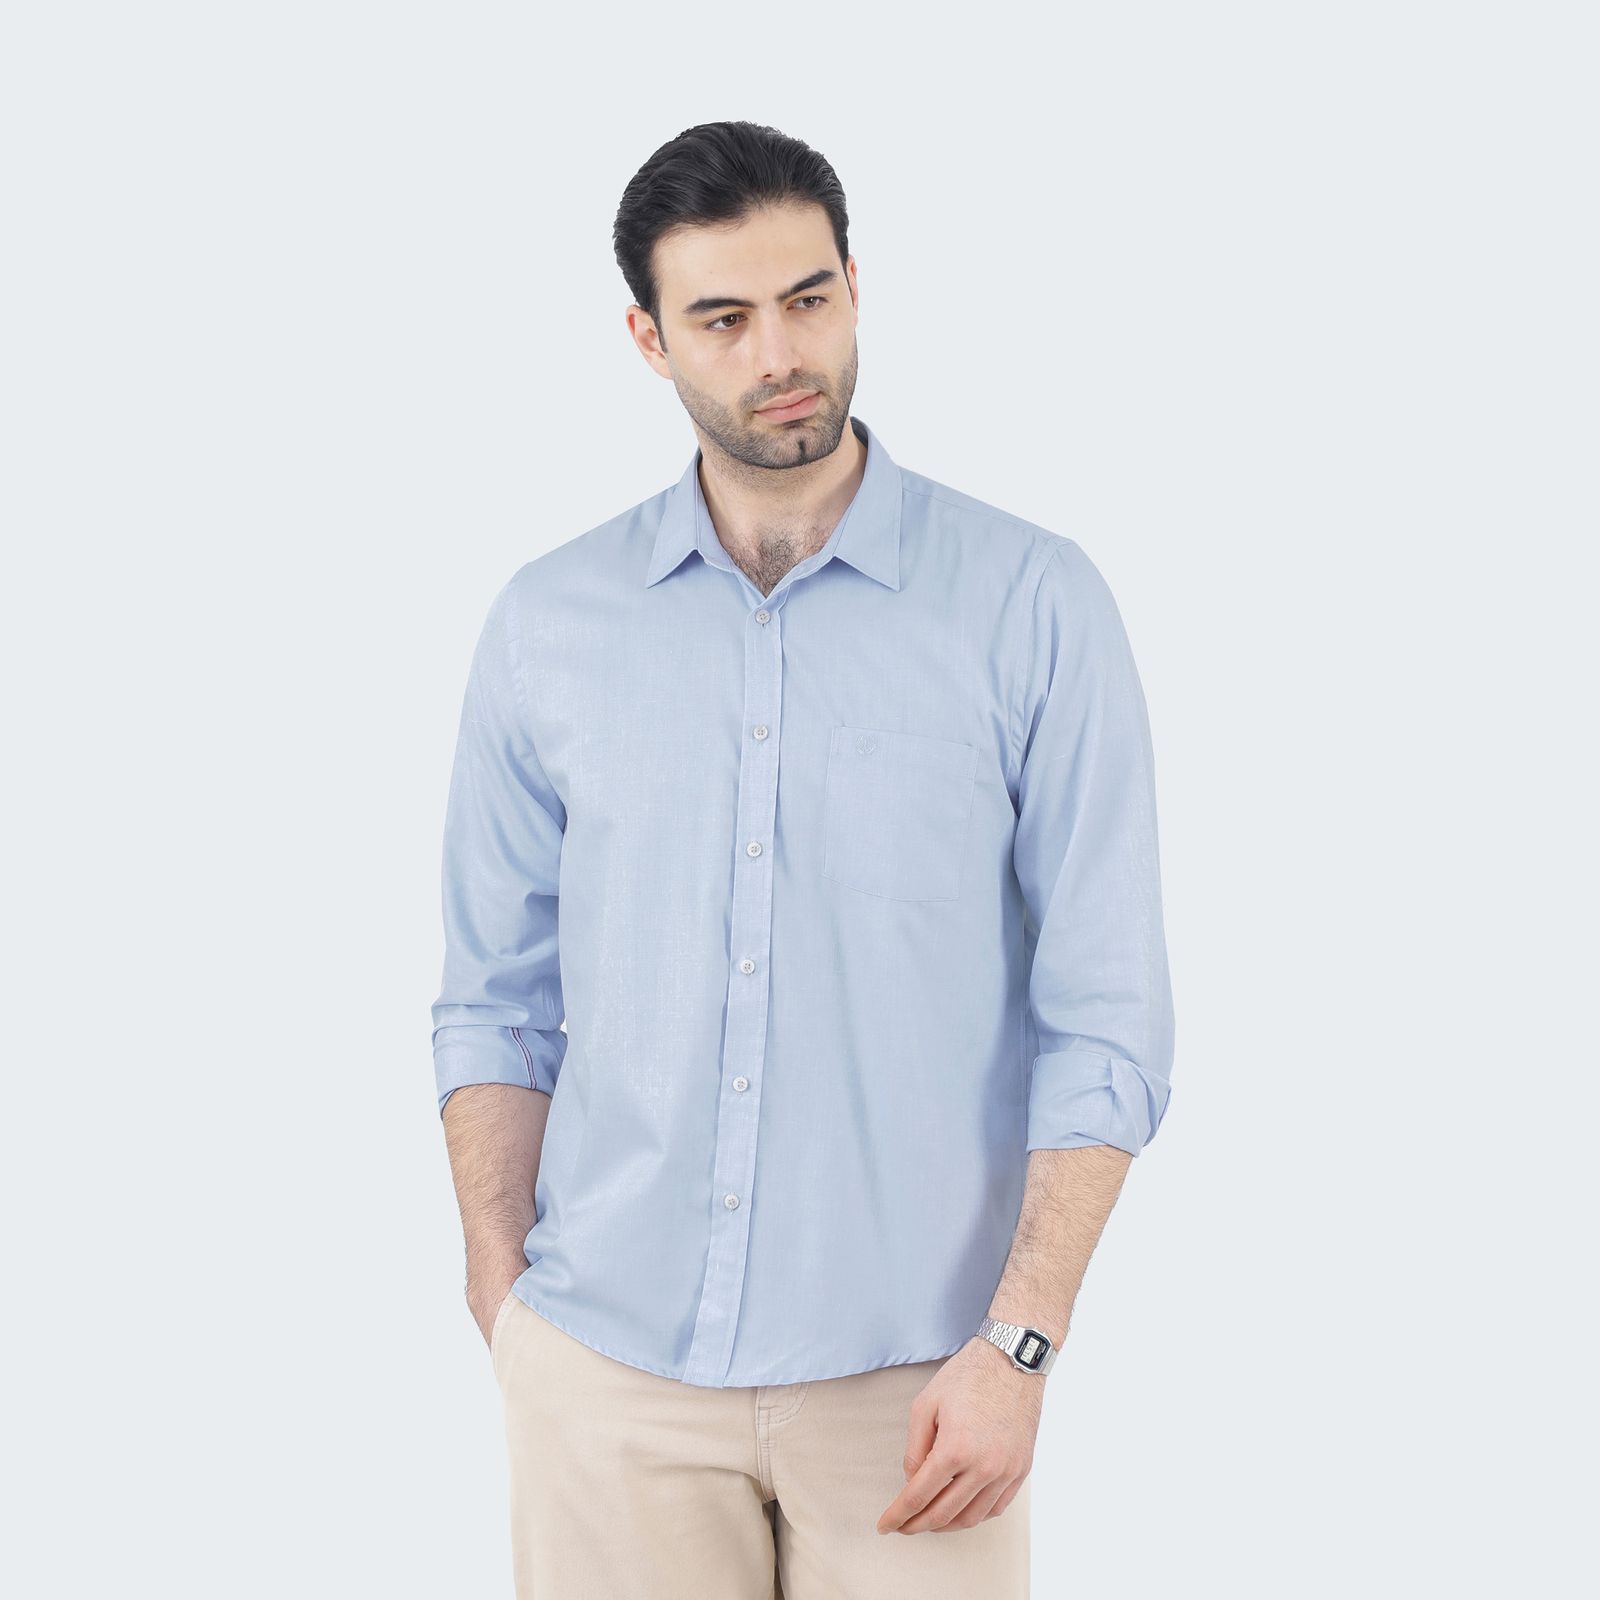 پیراهن آستین بلند مردانه پاتن جامه مدل تترون 102821020289306 رنگ آبی -  - 2